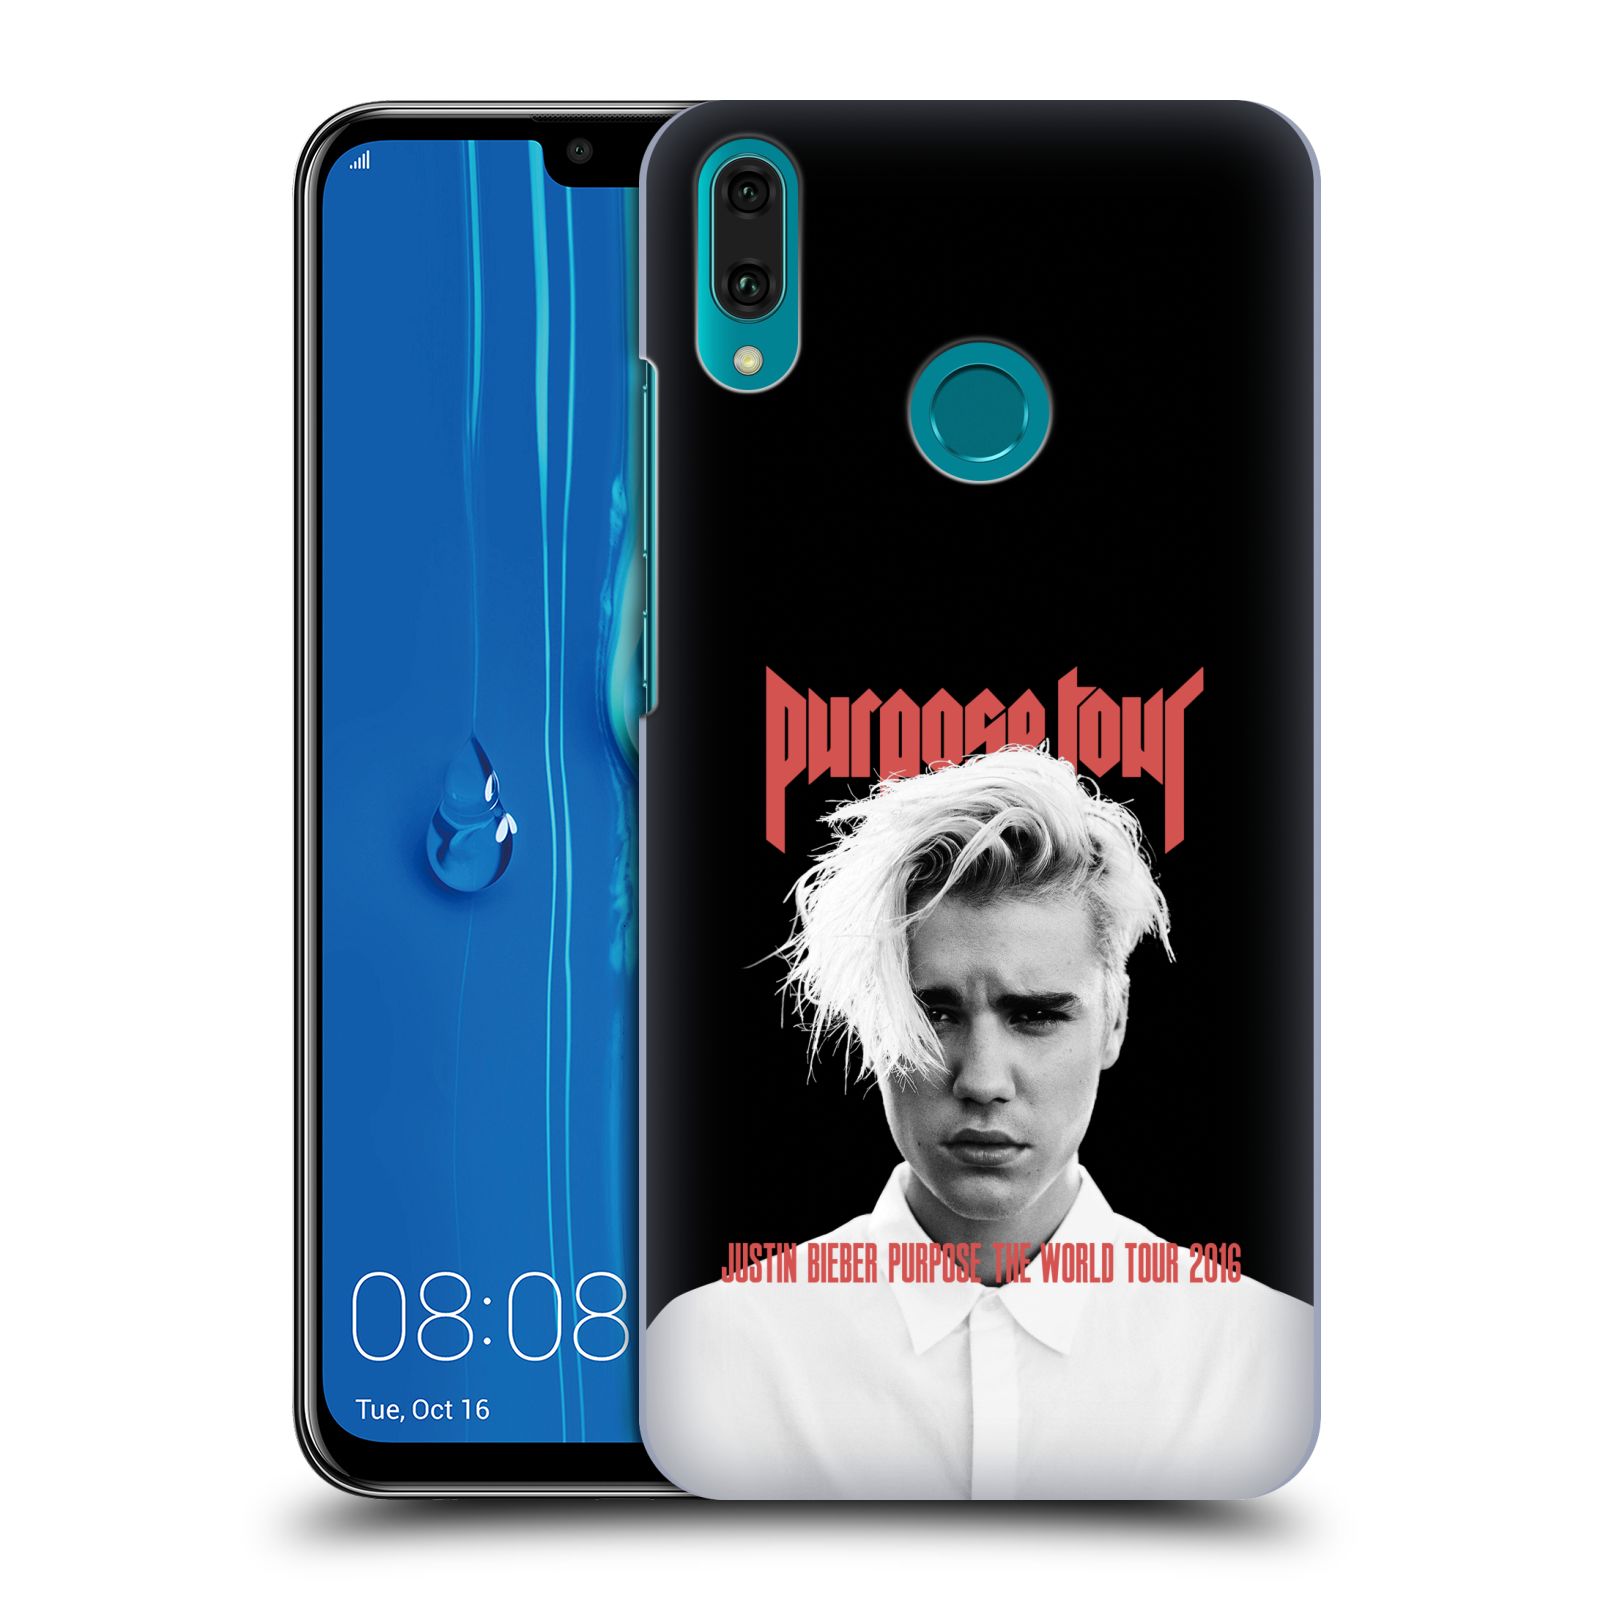 Pouzdro na mobil Huawei Y9 2019 - HEAD CASE - Justin Bieber foto Purpose tour černé pozadí